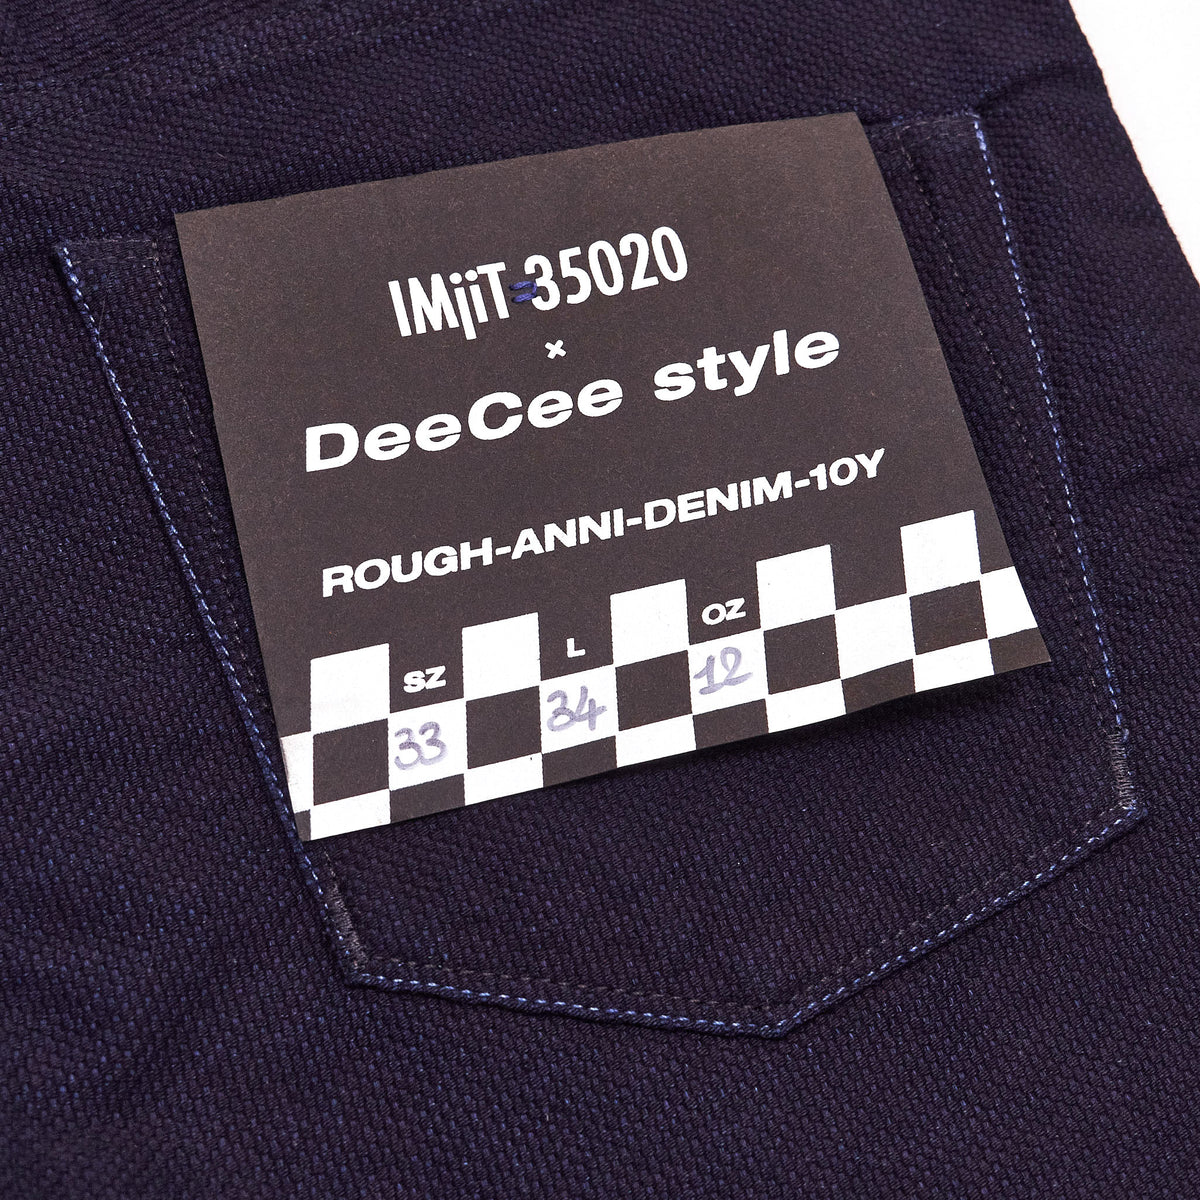 IMjiT 35020 x DeeCee style Anniversary Sashiko Jeans